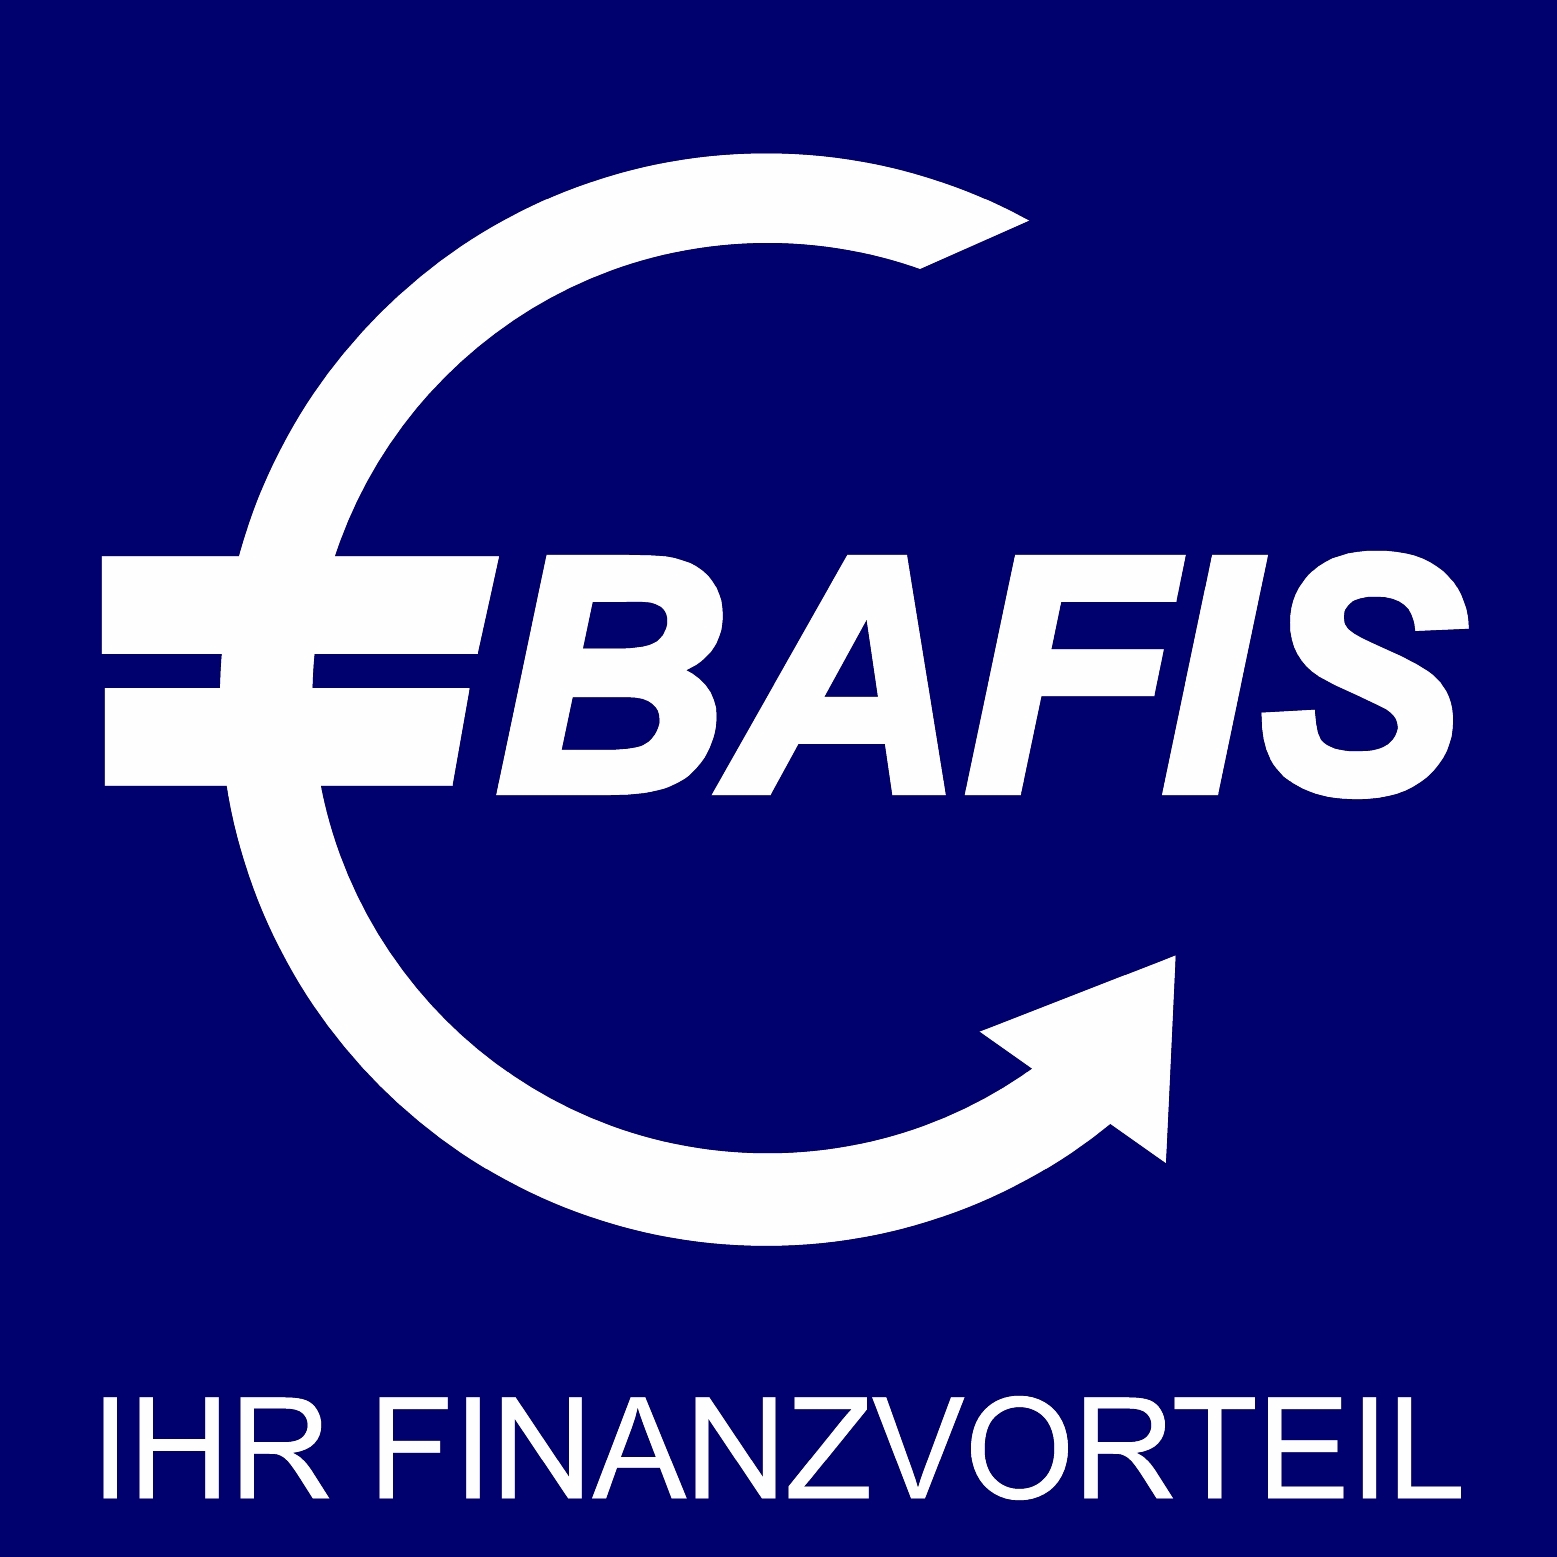 BAFIS - Ihr Finanzvorteil. Seit 20 Jahren Kompetenz als Finanz-, Immobilien und Versicherungsmakler in Halle (Saale)